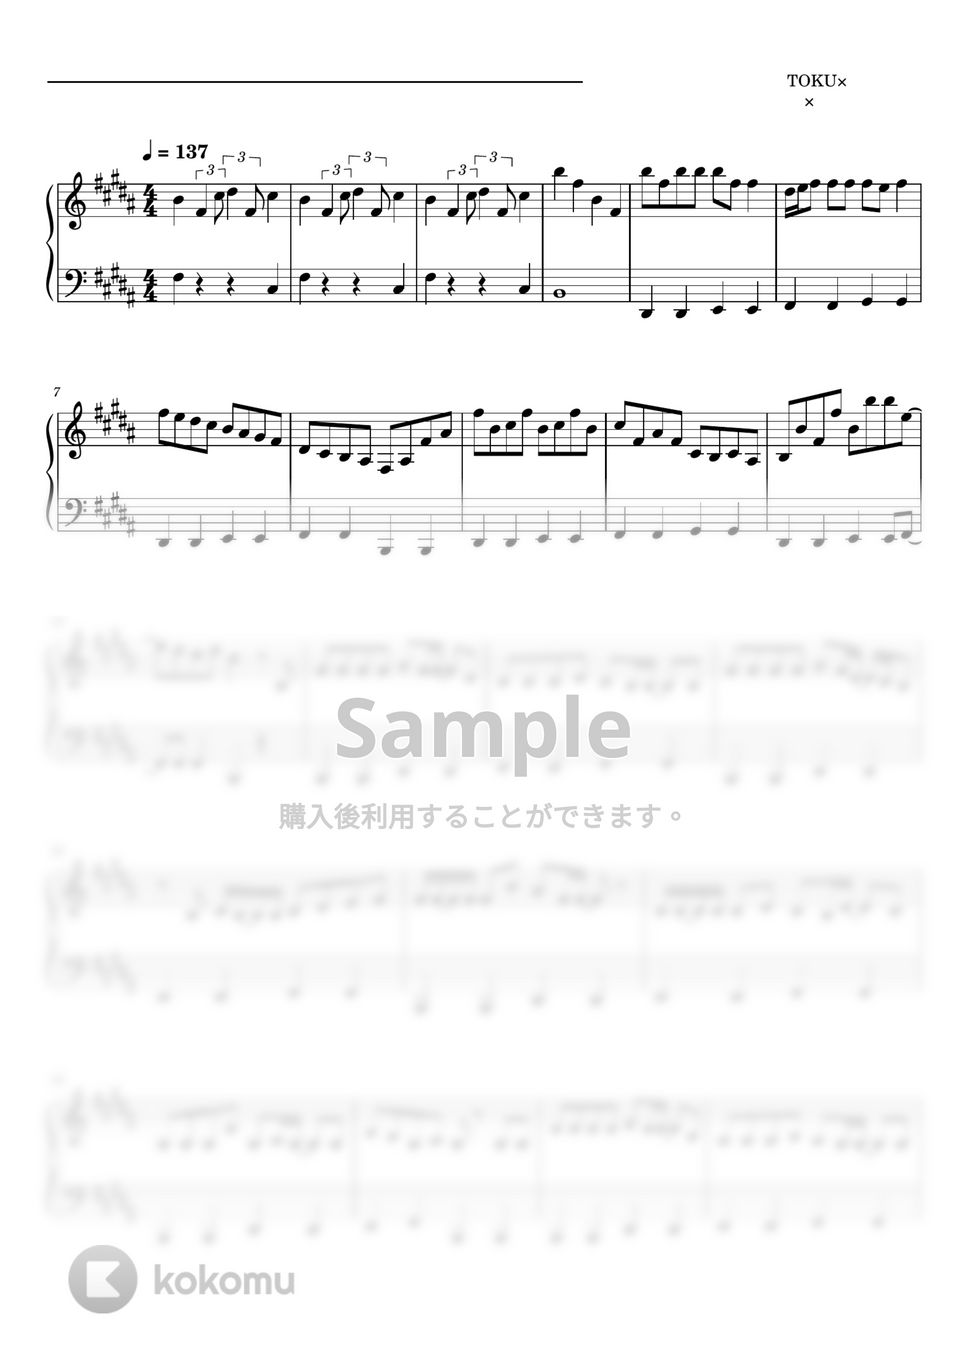 すとぷり - クリスマスの魔法 (ピアノソロ譜 クリスマス) by 萌や氏